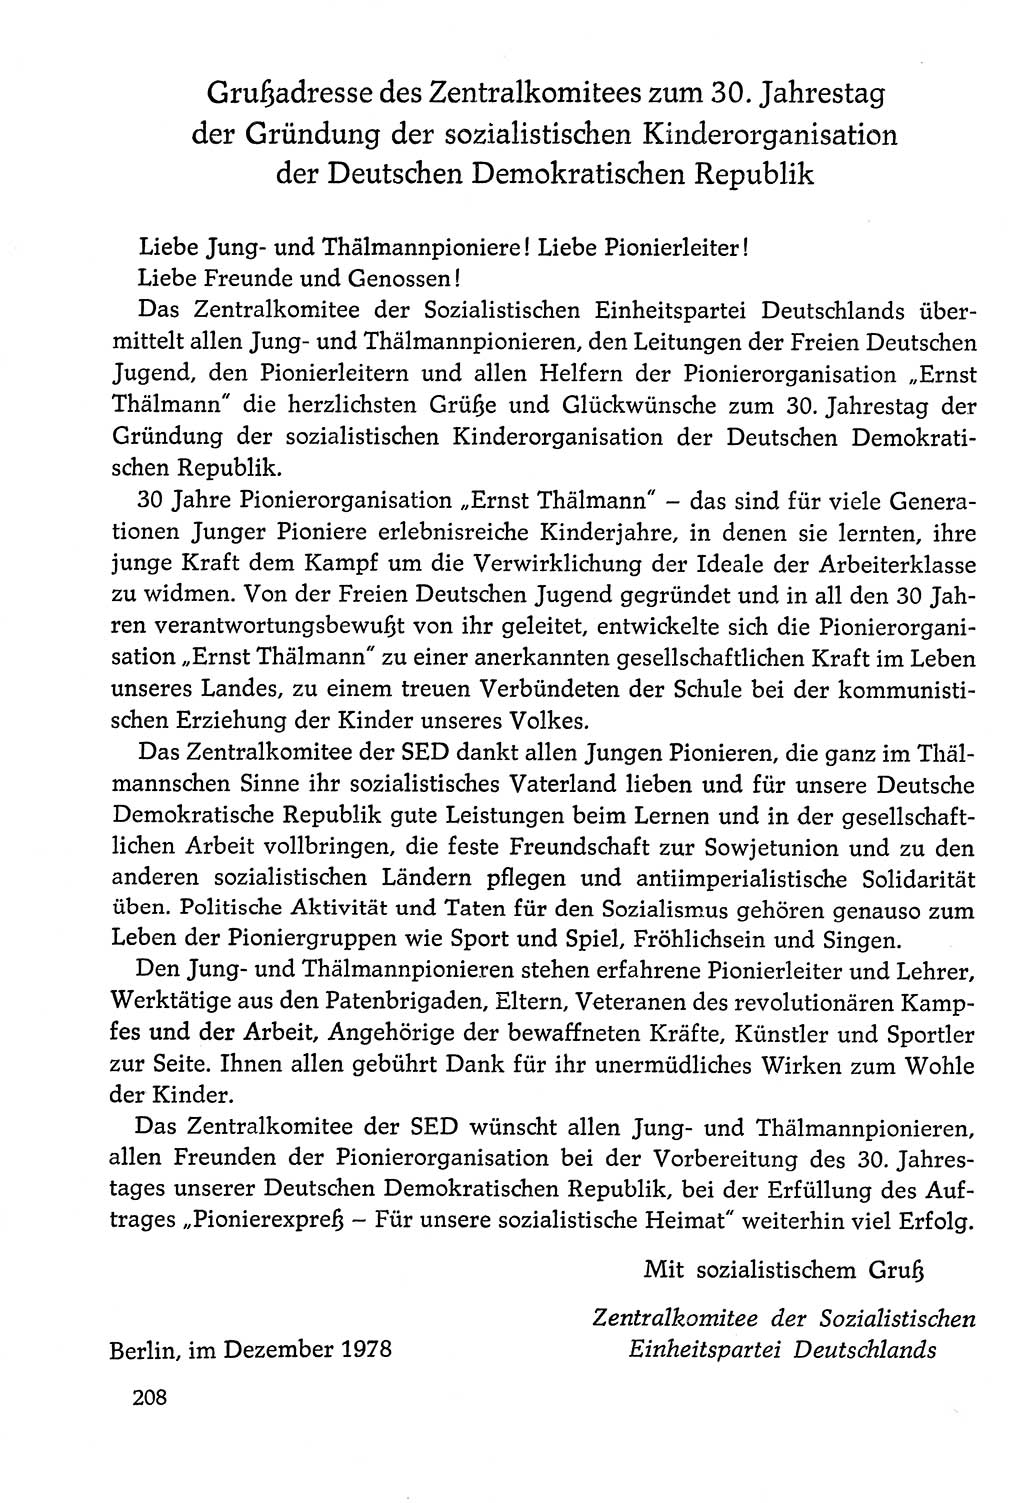 Dokumente der Sozialistischen Einheitspartei Deutschlands (SED) [Deutsche Demokratische Republik (DDR)] 1978-1979, Seite 208 (Dok. SED DDR 1978-1979, S. 208)